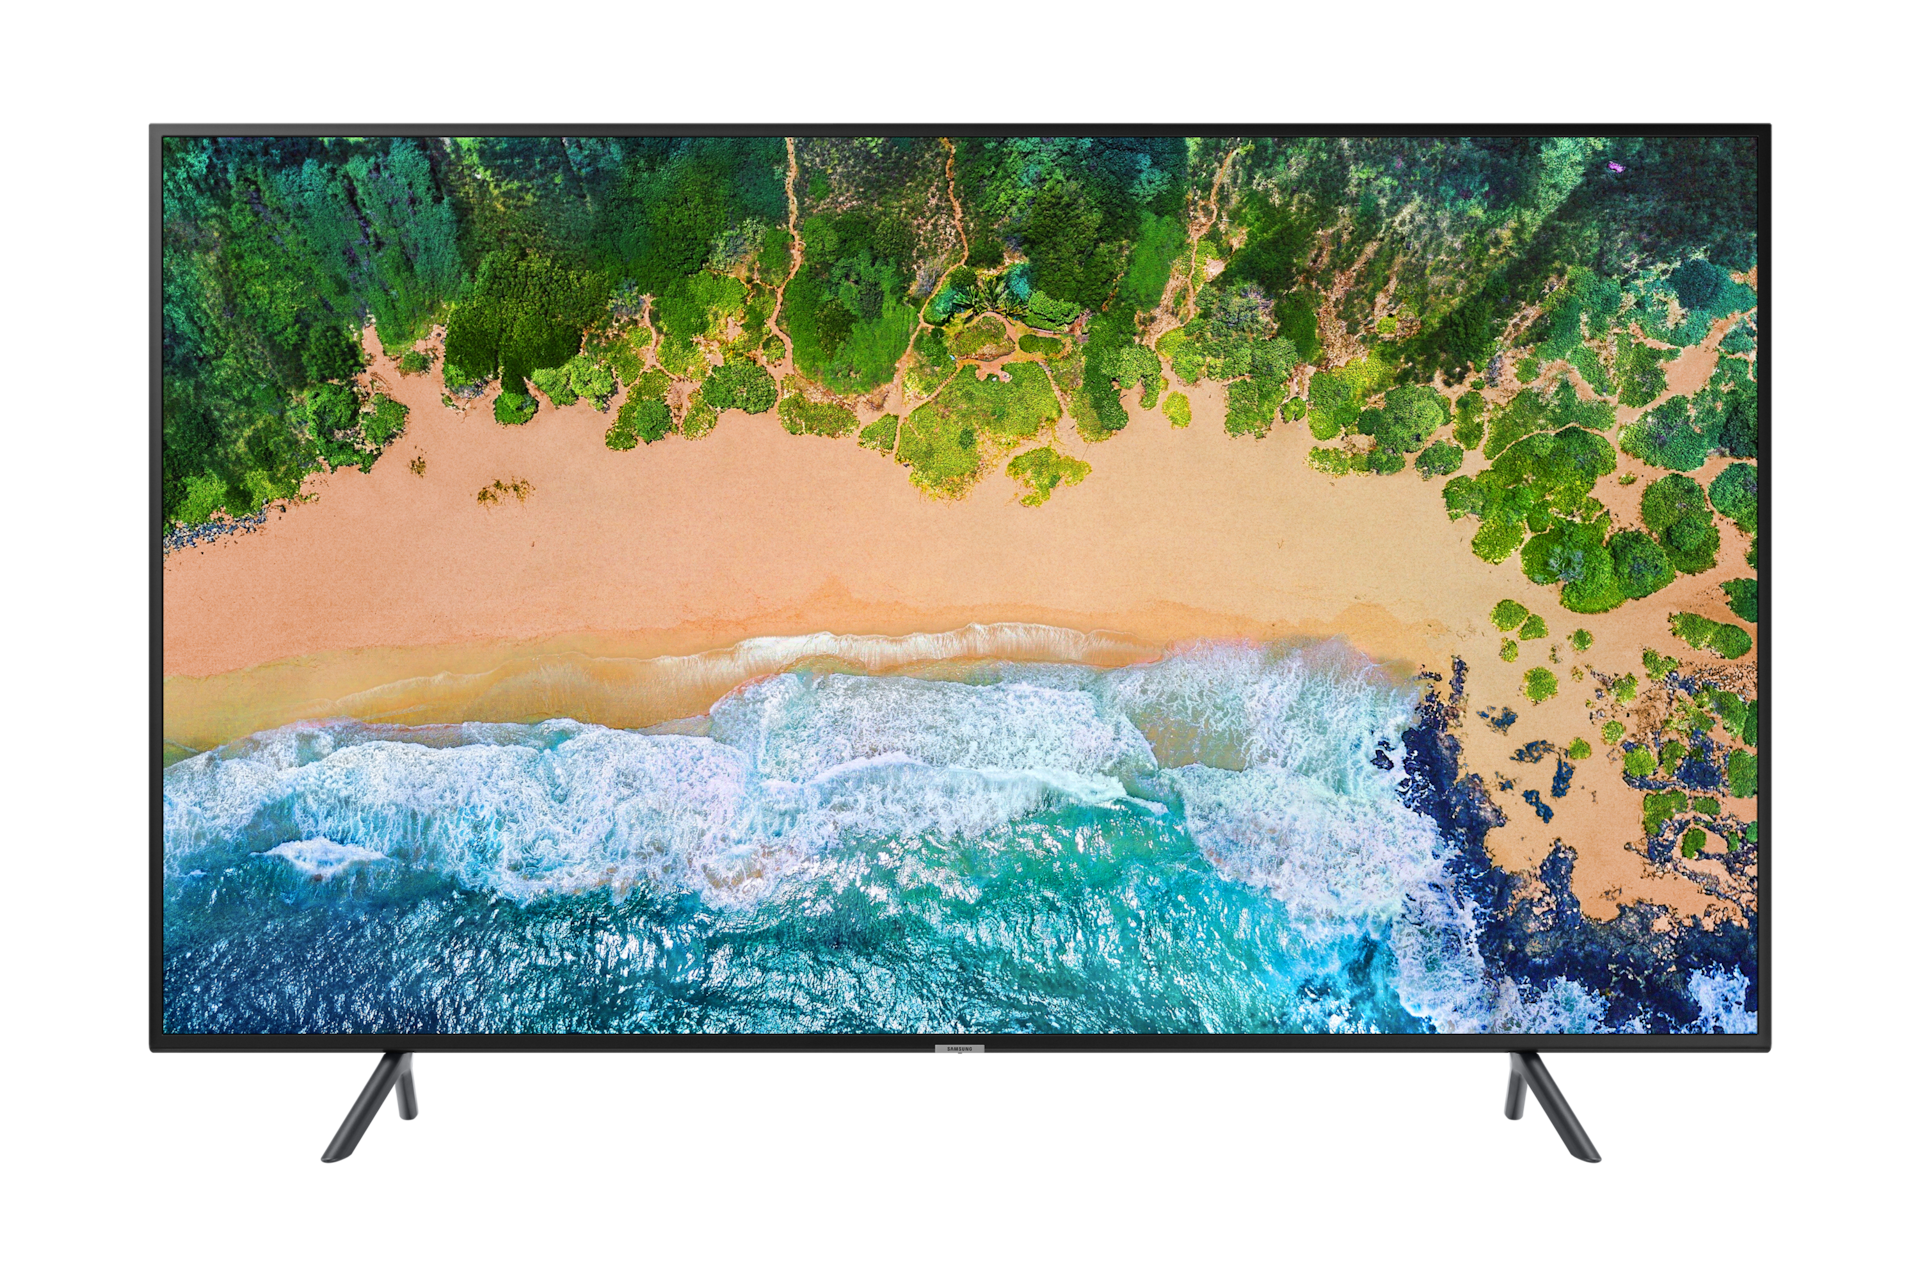 22+ Sharp 55 inch 4k smart tv vs samsung ideas in 2021 